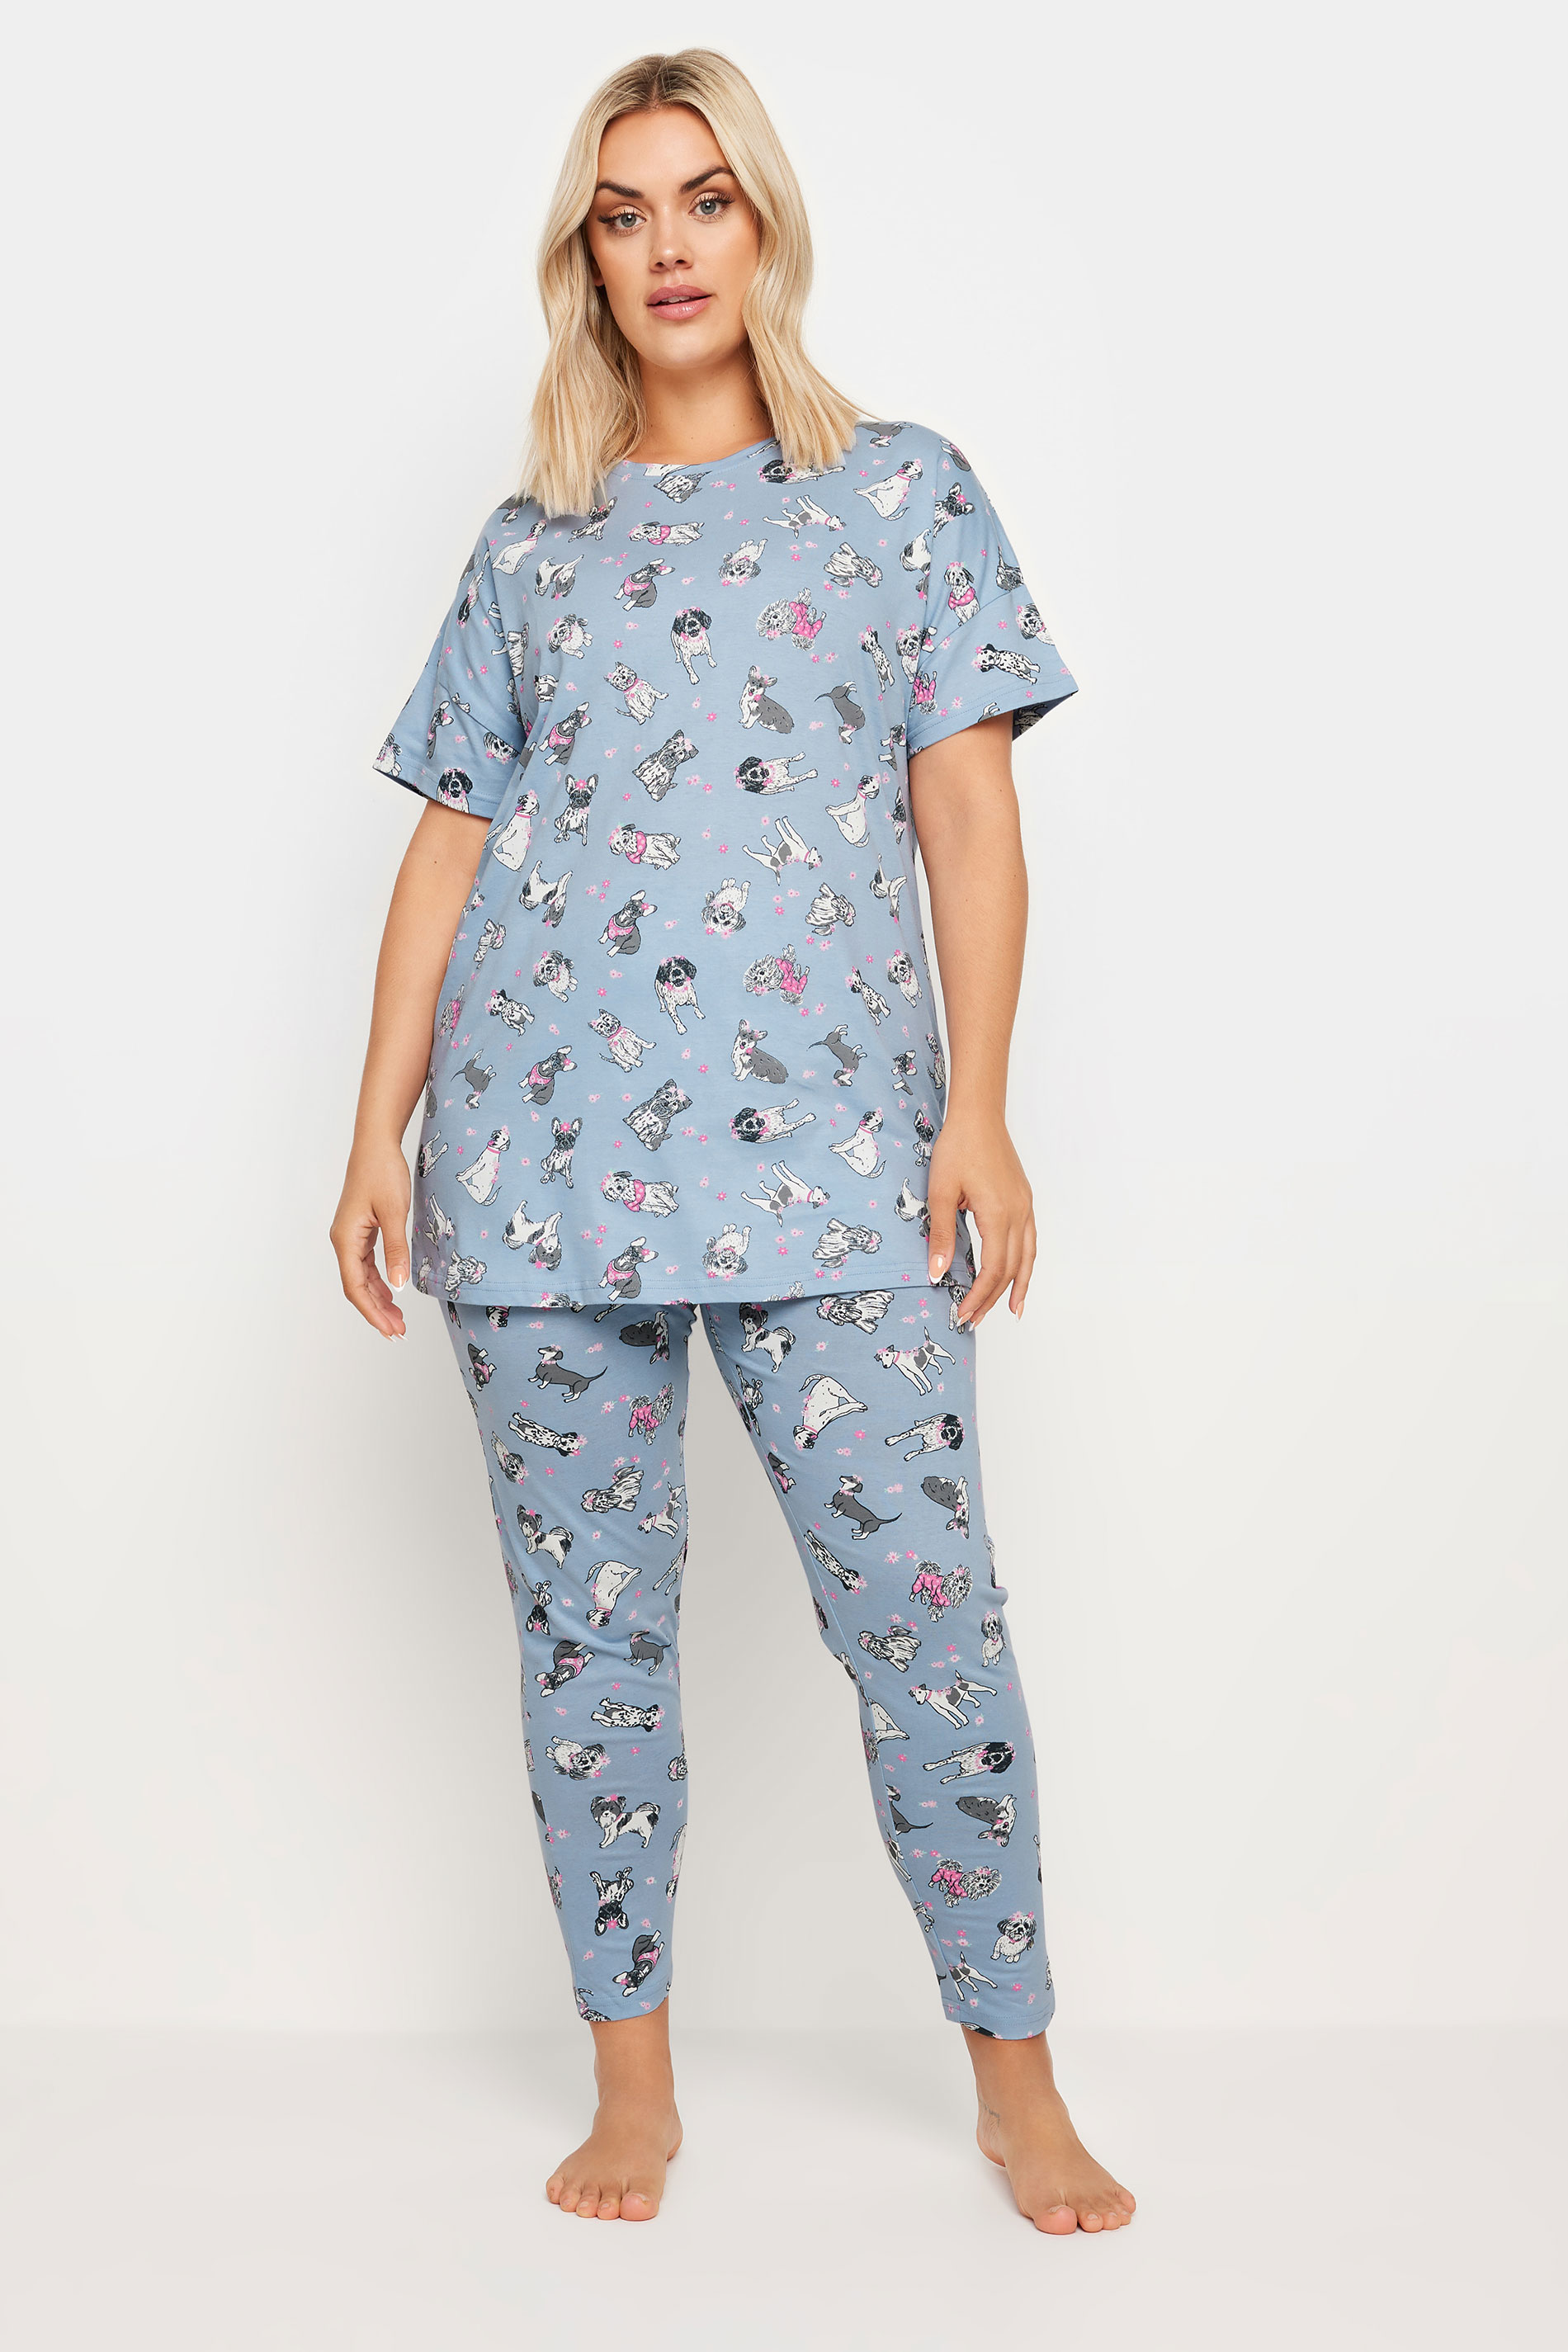 YOURS Plus Size Blue Dog Print Pyjama Set | Yours Clothing 2